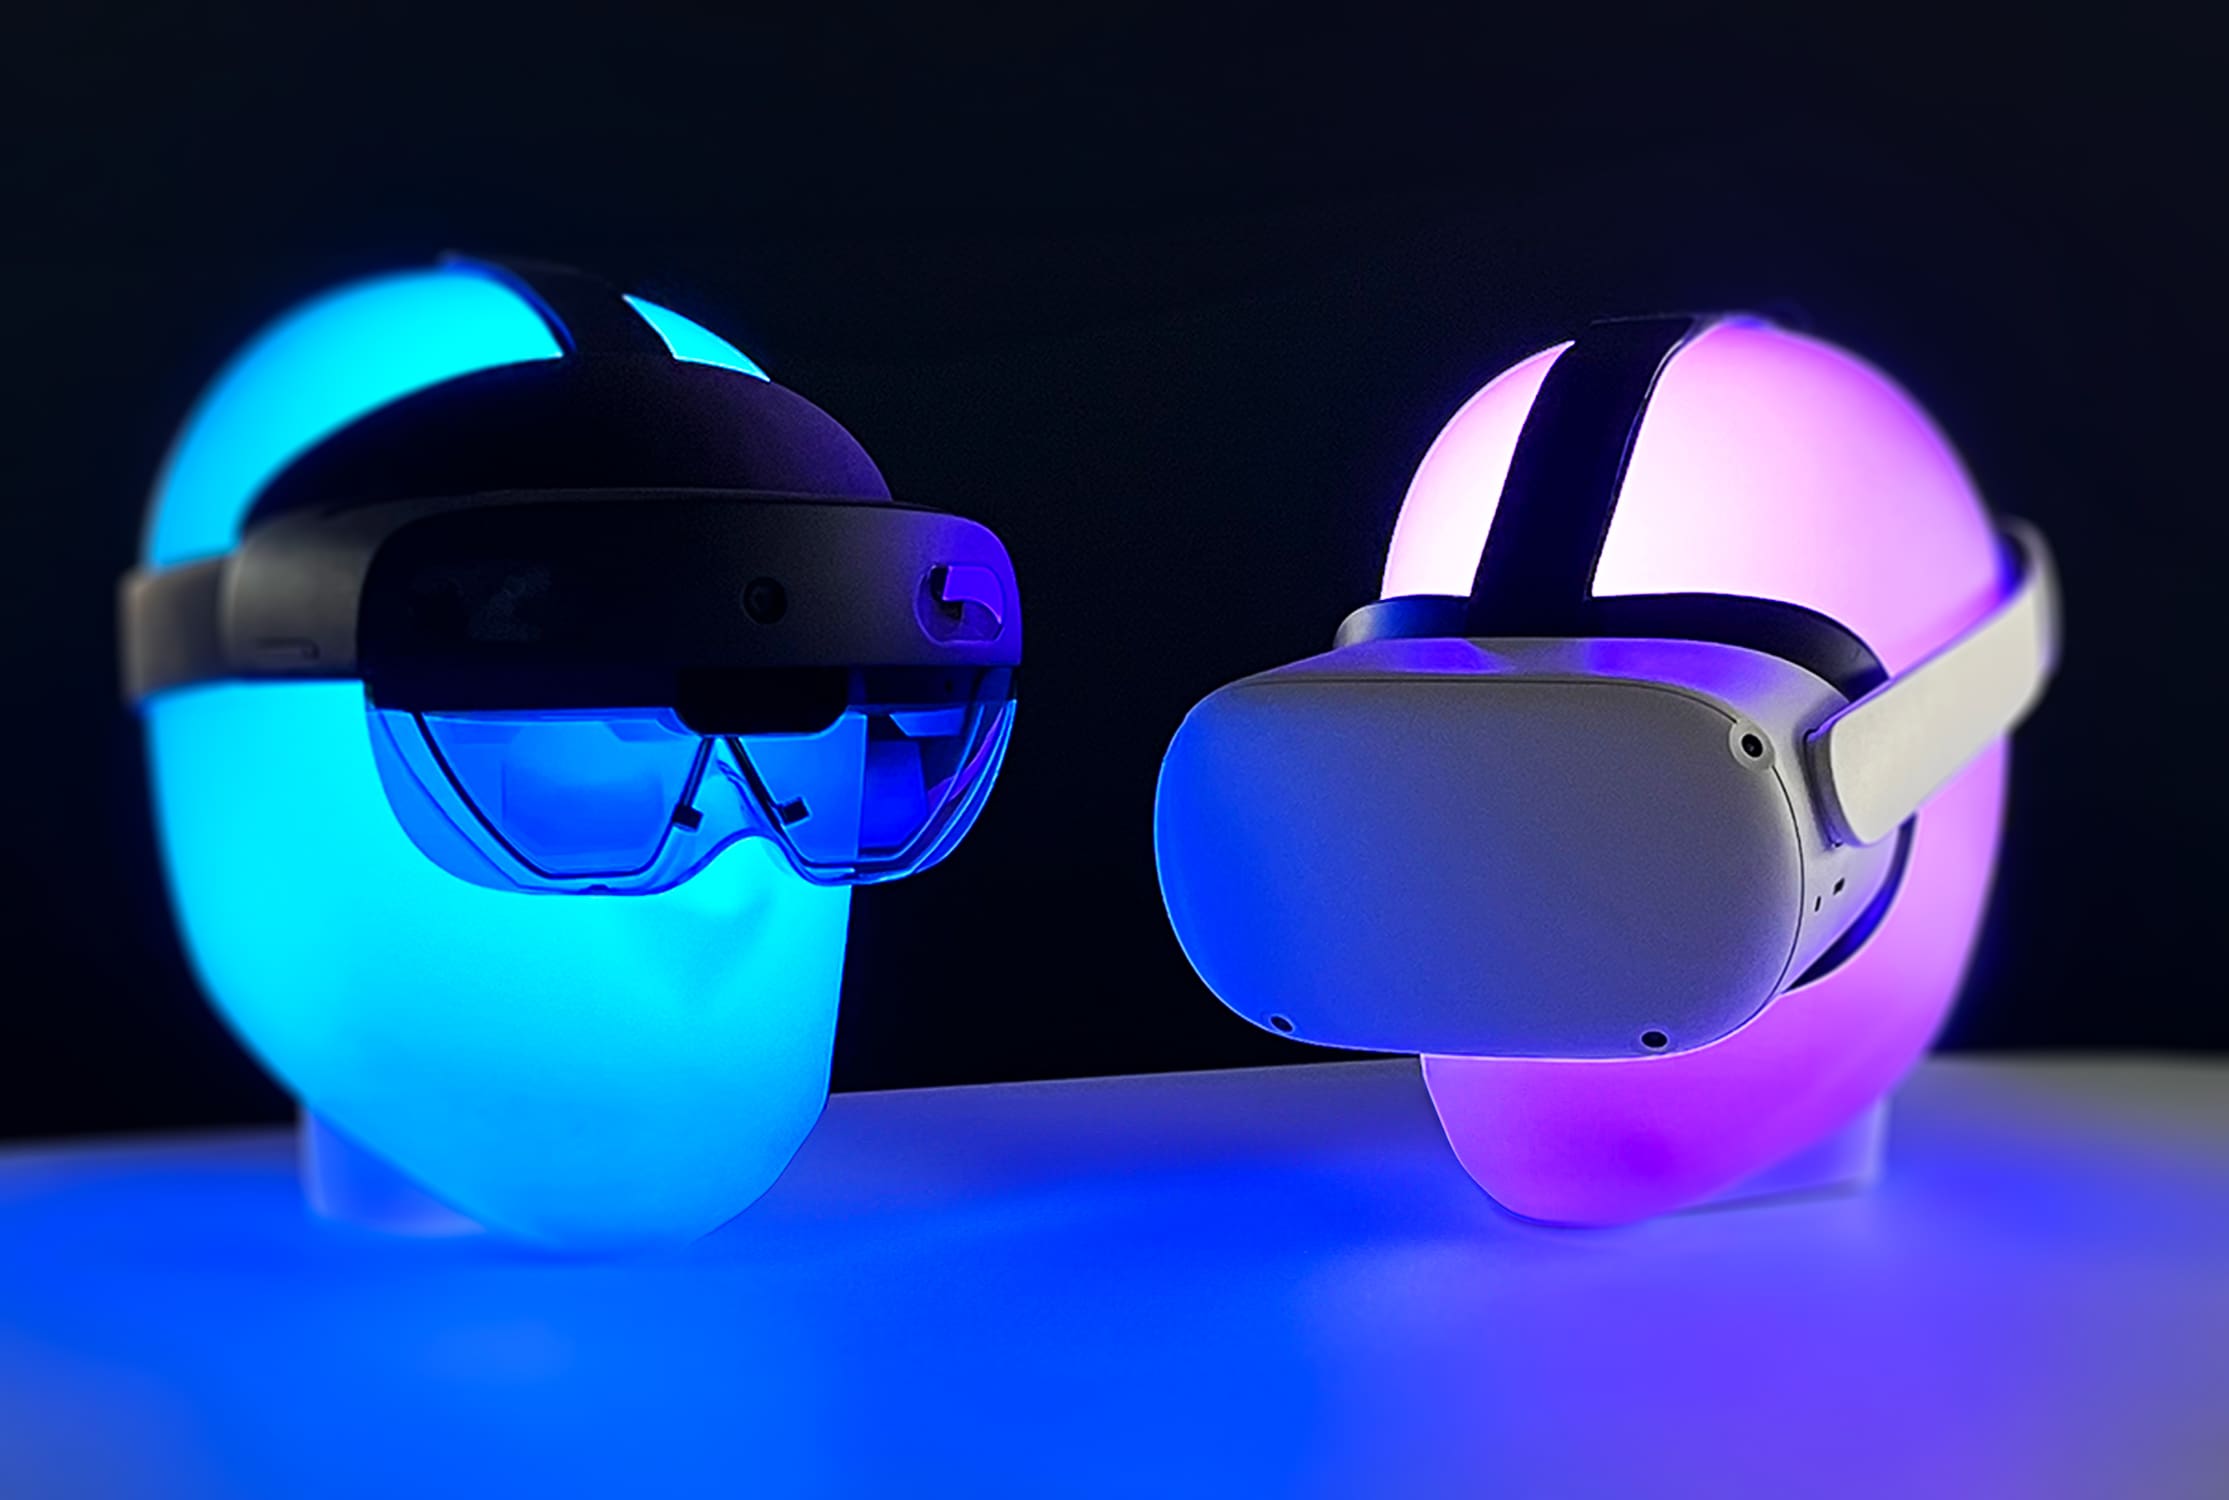 Zwei Headsets auf leuchtenden Ständern, eines für Augmented Reality (AR) und das andere für Virtual Reality (VR), beleuchtet in blauem und pinkem Neonlicht, repräsentieren die moderne AR- und VR-Technologie.